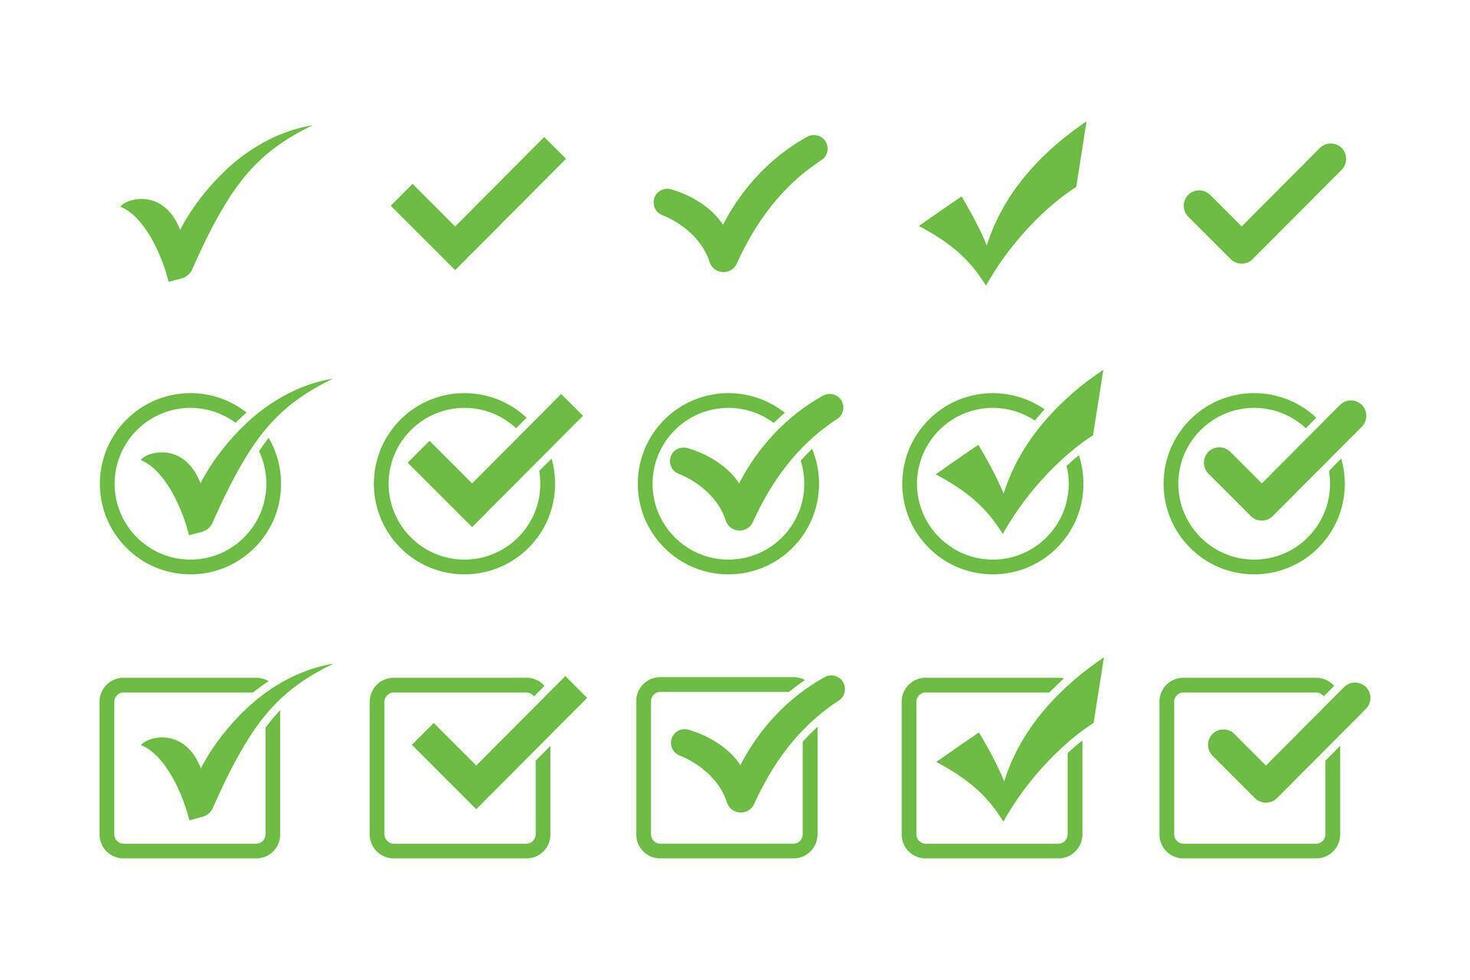 Green check mark icon set. Tick symbol in green color. Check mark symbols vector